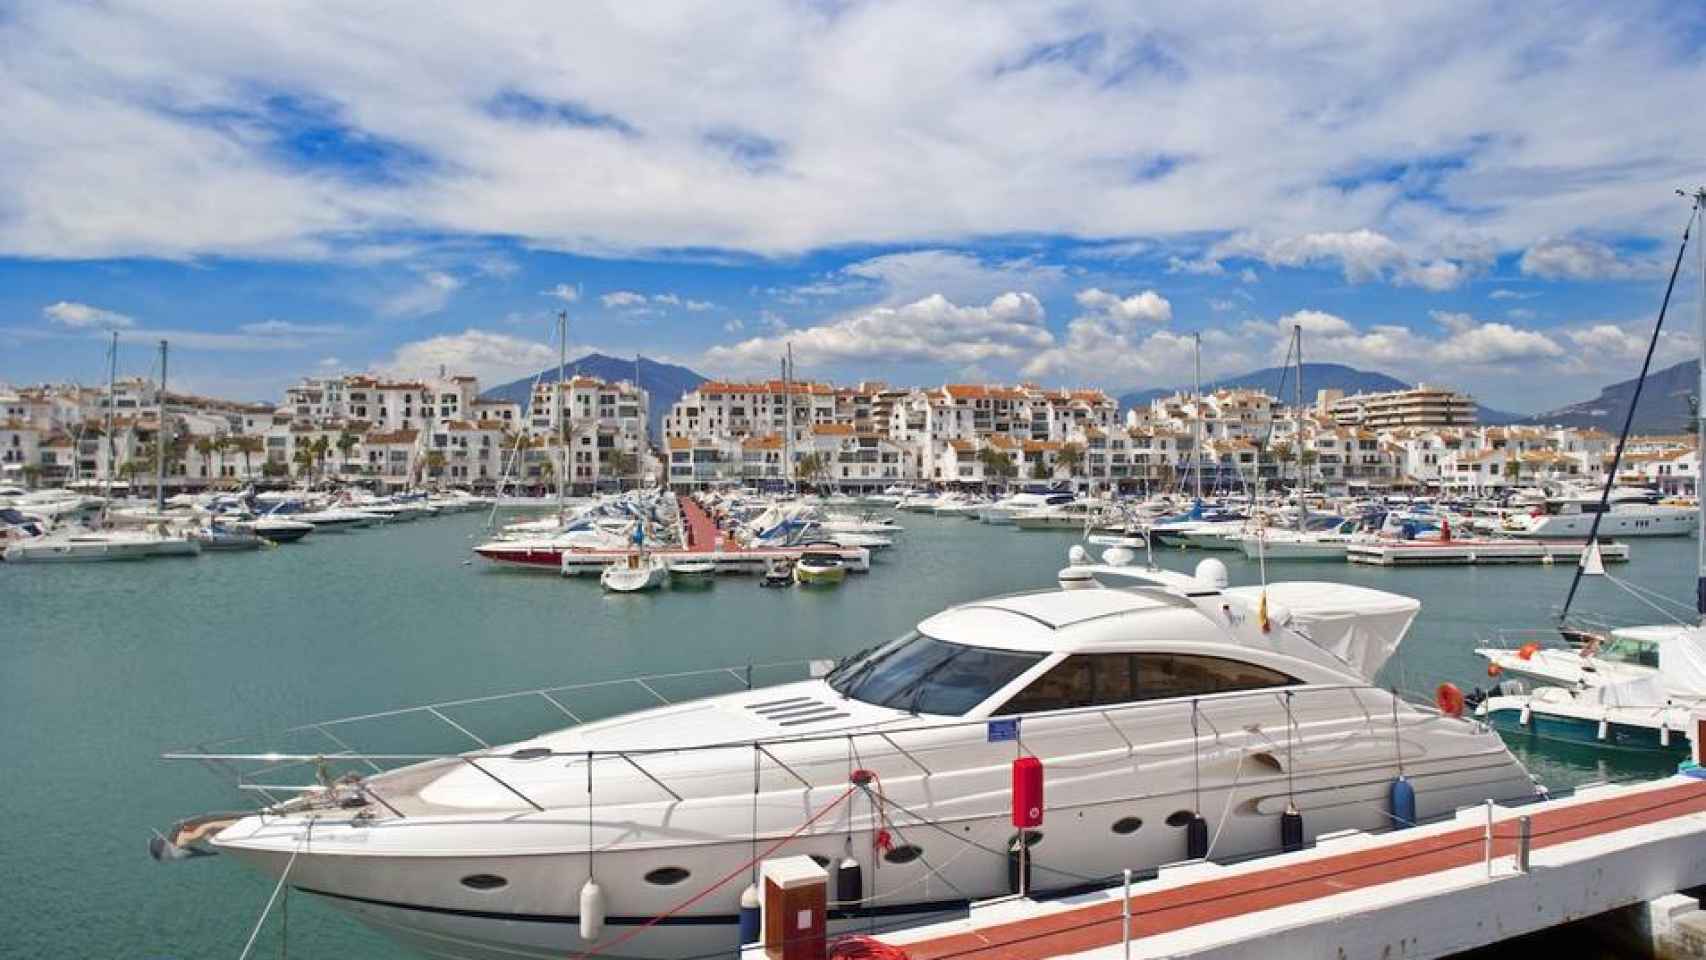 Vista general de Puerto Banus con sus yates de lujo amarrados en Marbella (Málaga).